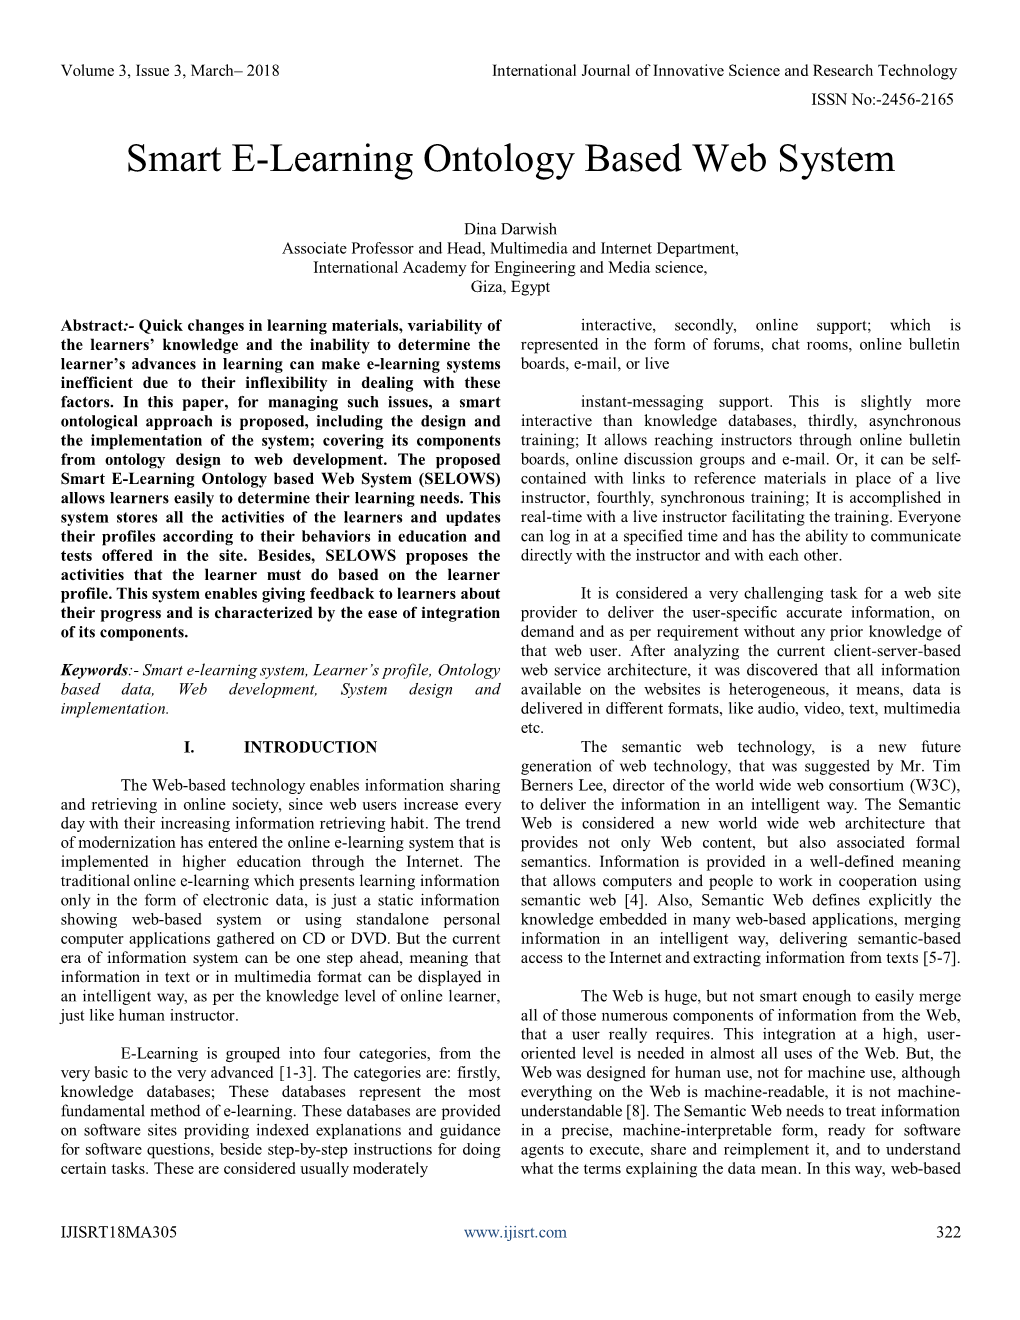 Smart E-Learning Ontology Based Web System